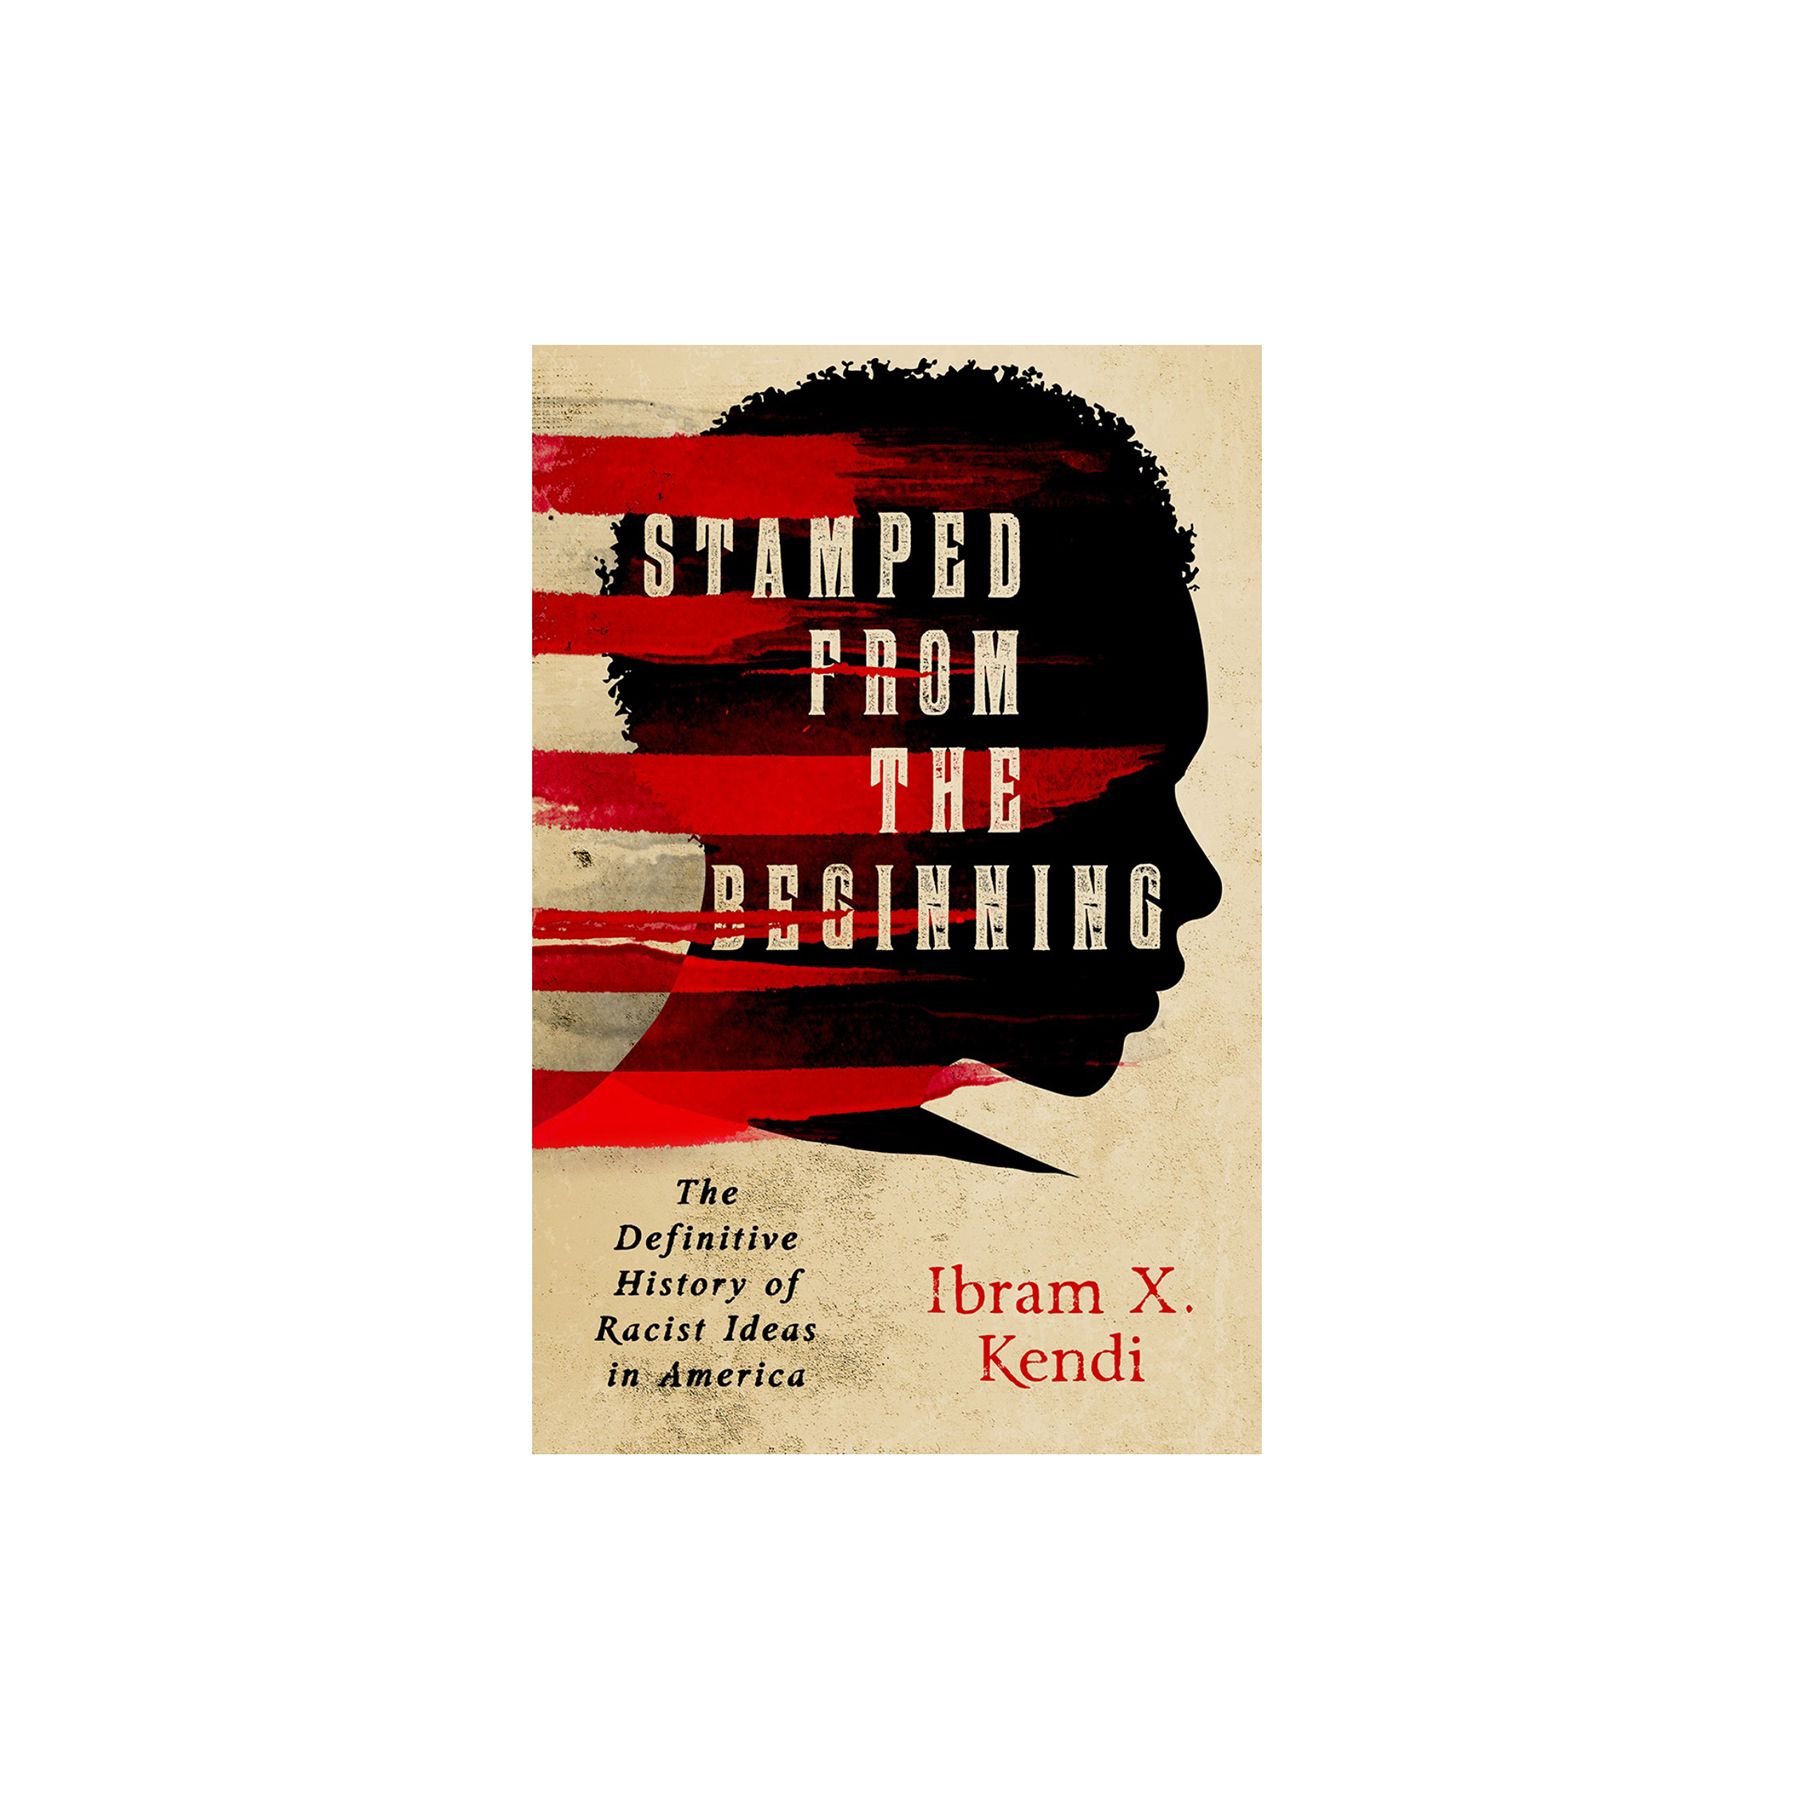 Pečiatkované od začiatku: Definitívne dejiny rasistických myšlienok v Amerike, autor Ibram X. Kendi